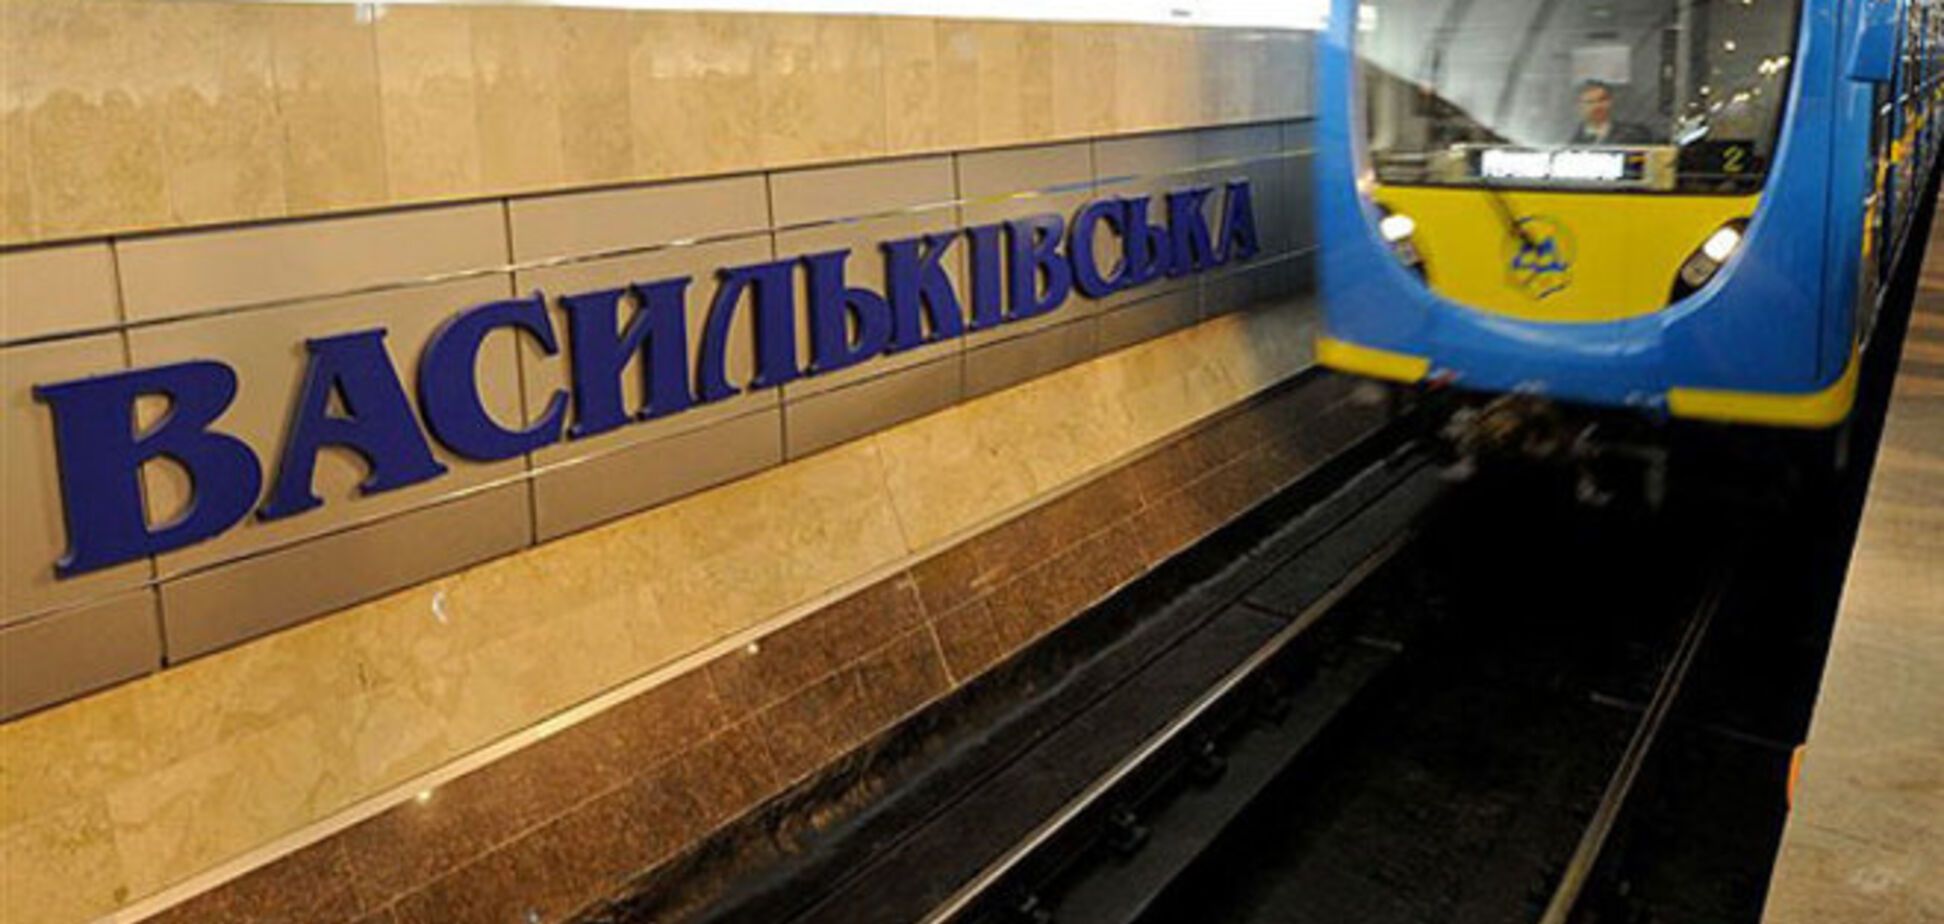 Начальник столичного метрополитена Казюлькин отказался идти в отставку